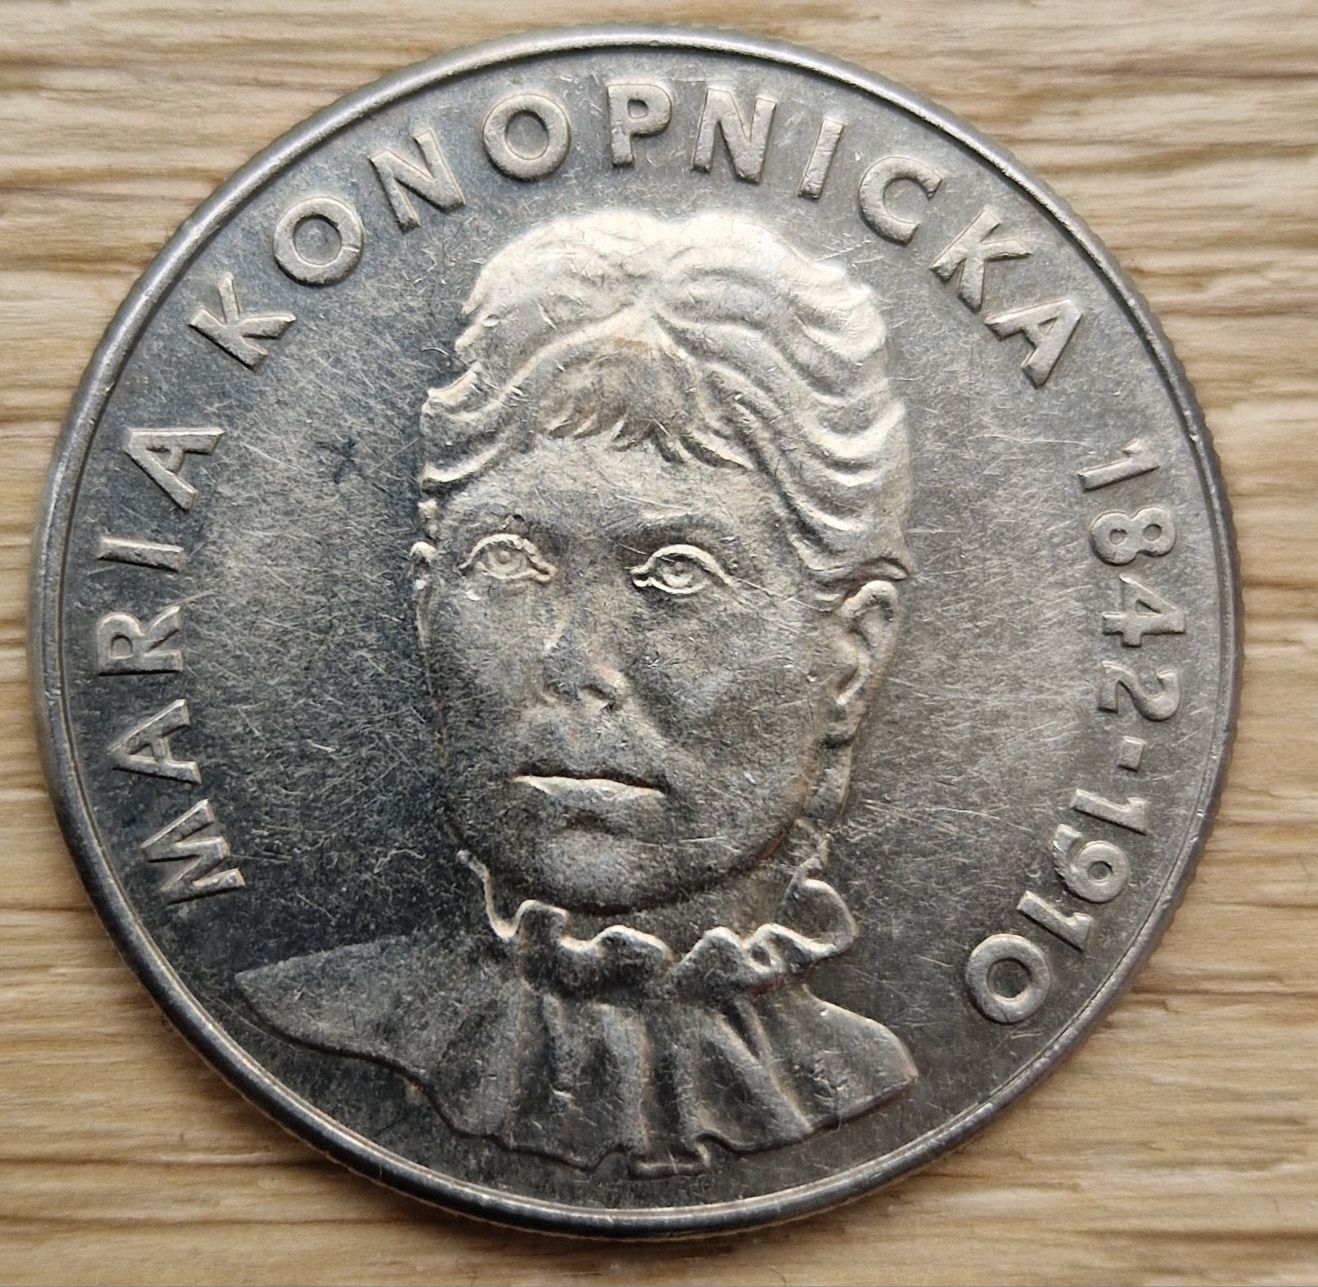 Moneta Maria Konopnicka 20 zł kolekcjonerska PRL